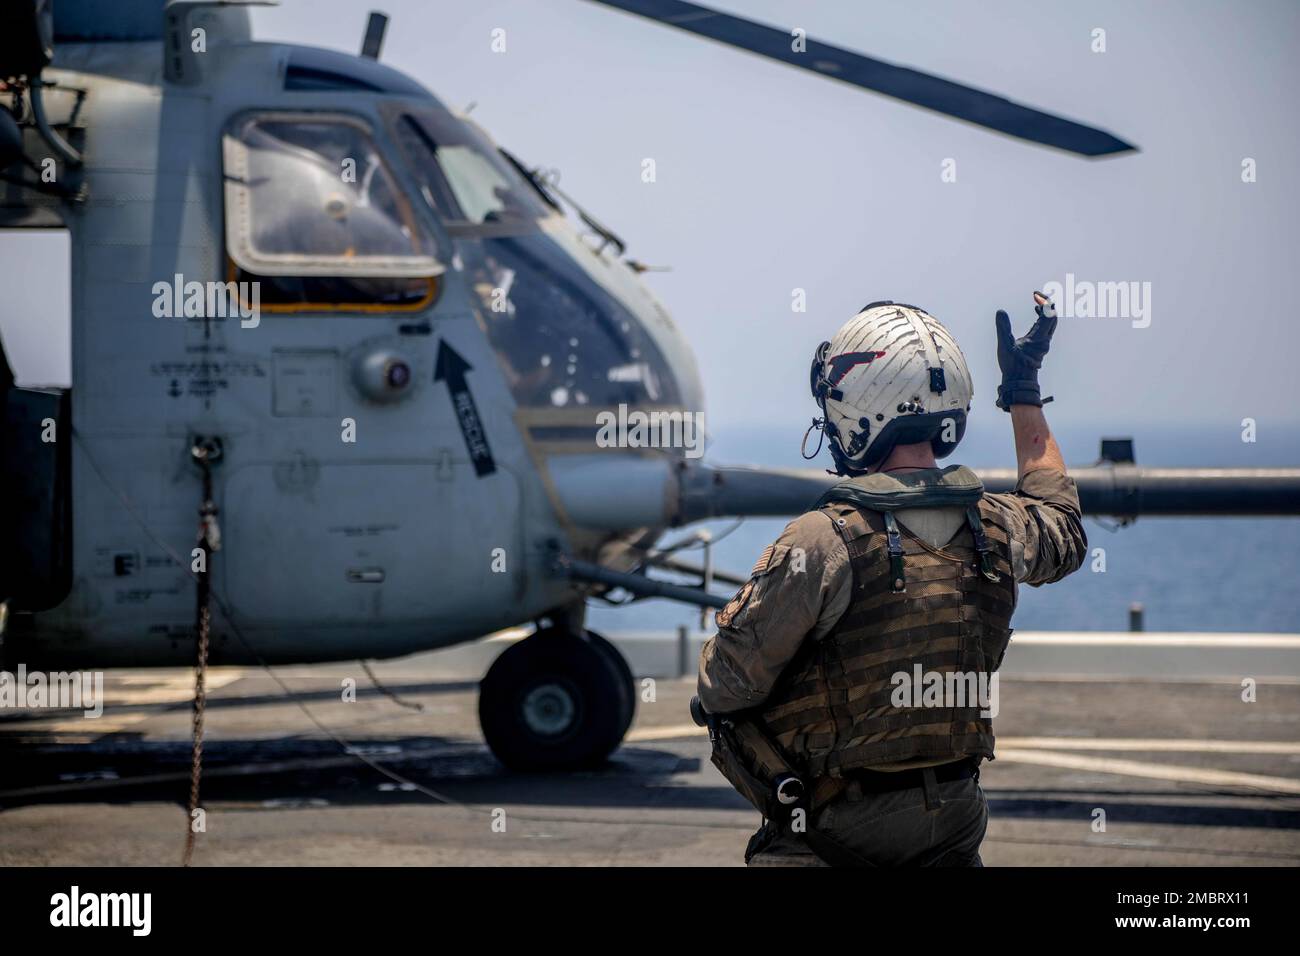 220621-A-EQ028-1083 ARABISCHER GOLF (21. Juni 2022) Aviation Warfare Systems 3. Klasse Kyle Gumz leitet einen MH-53 Sea Dragon Helicopter Helicopter Mine Countermeasures (HM) Squadron 15 während des Flugbetriebs an Bord der Expeditionsbasis USS Lewis B. Puller (ESB 3) während der Übung Iron Defender im Arabischen Golf, Juni 21. Iron Defender ist eine jährliche bilaterale Schulungsveranstaltung zwischen den USA Zentralkommando der Marinekräfte und Streitkräfte aus den Vereinigten Arabischen Emiraten. Die Übung konzentriert sich auf Maßnahmen zur Gefahrenabwehr im Seeverkehr, Minenabwehrmaßnahmen und Hafenschutz. Stockfoto